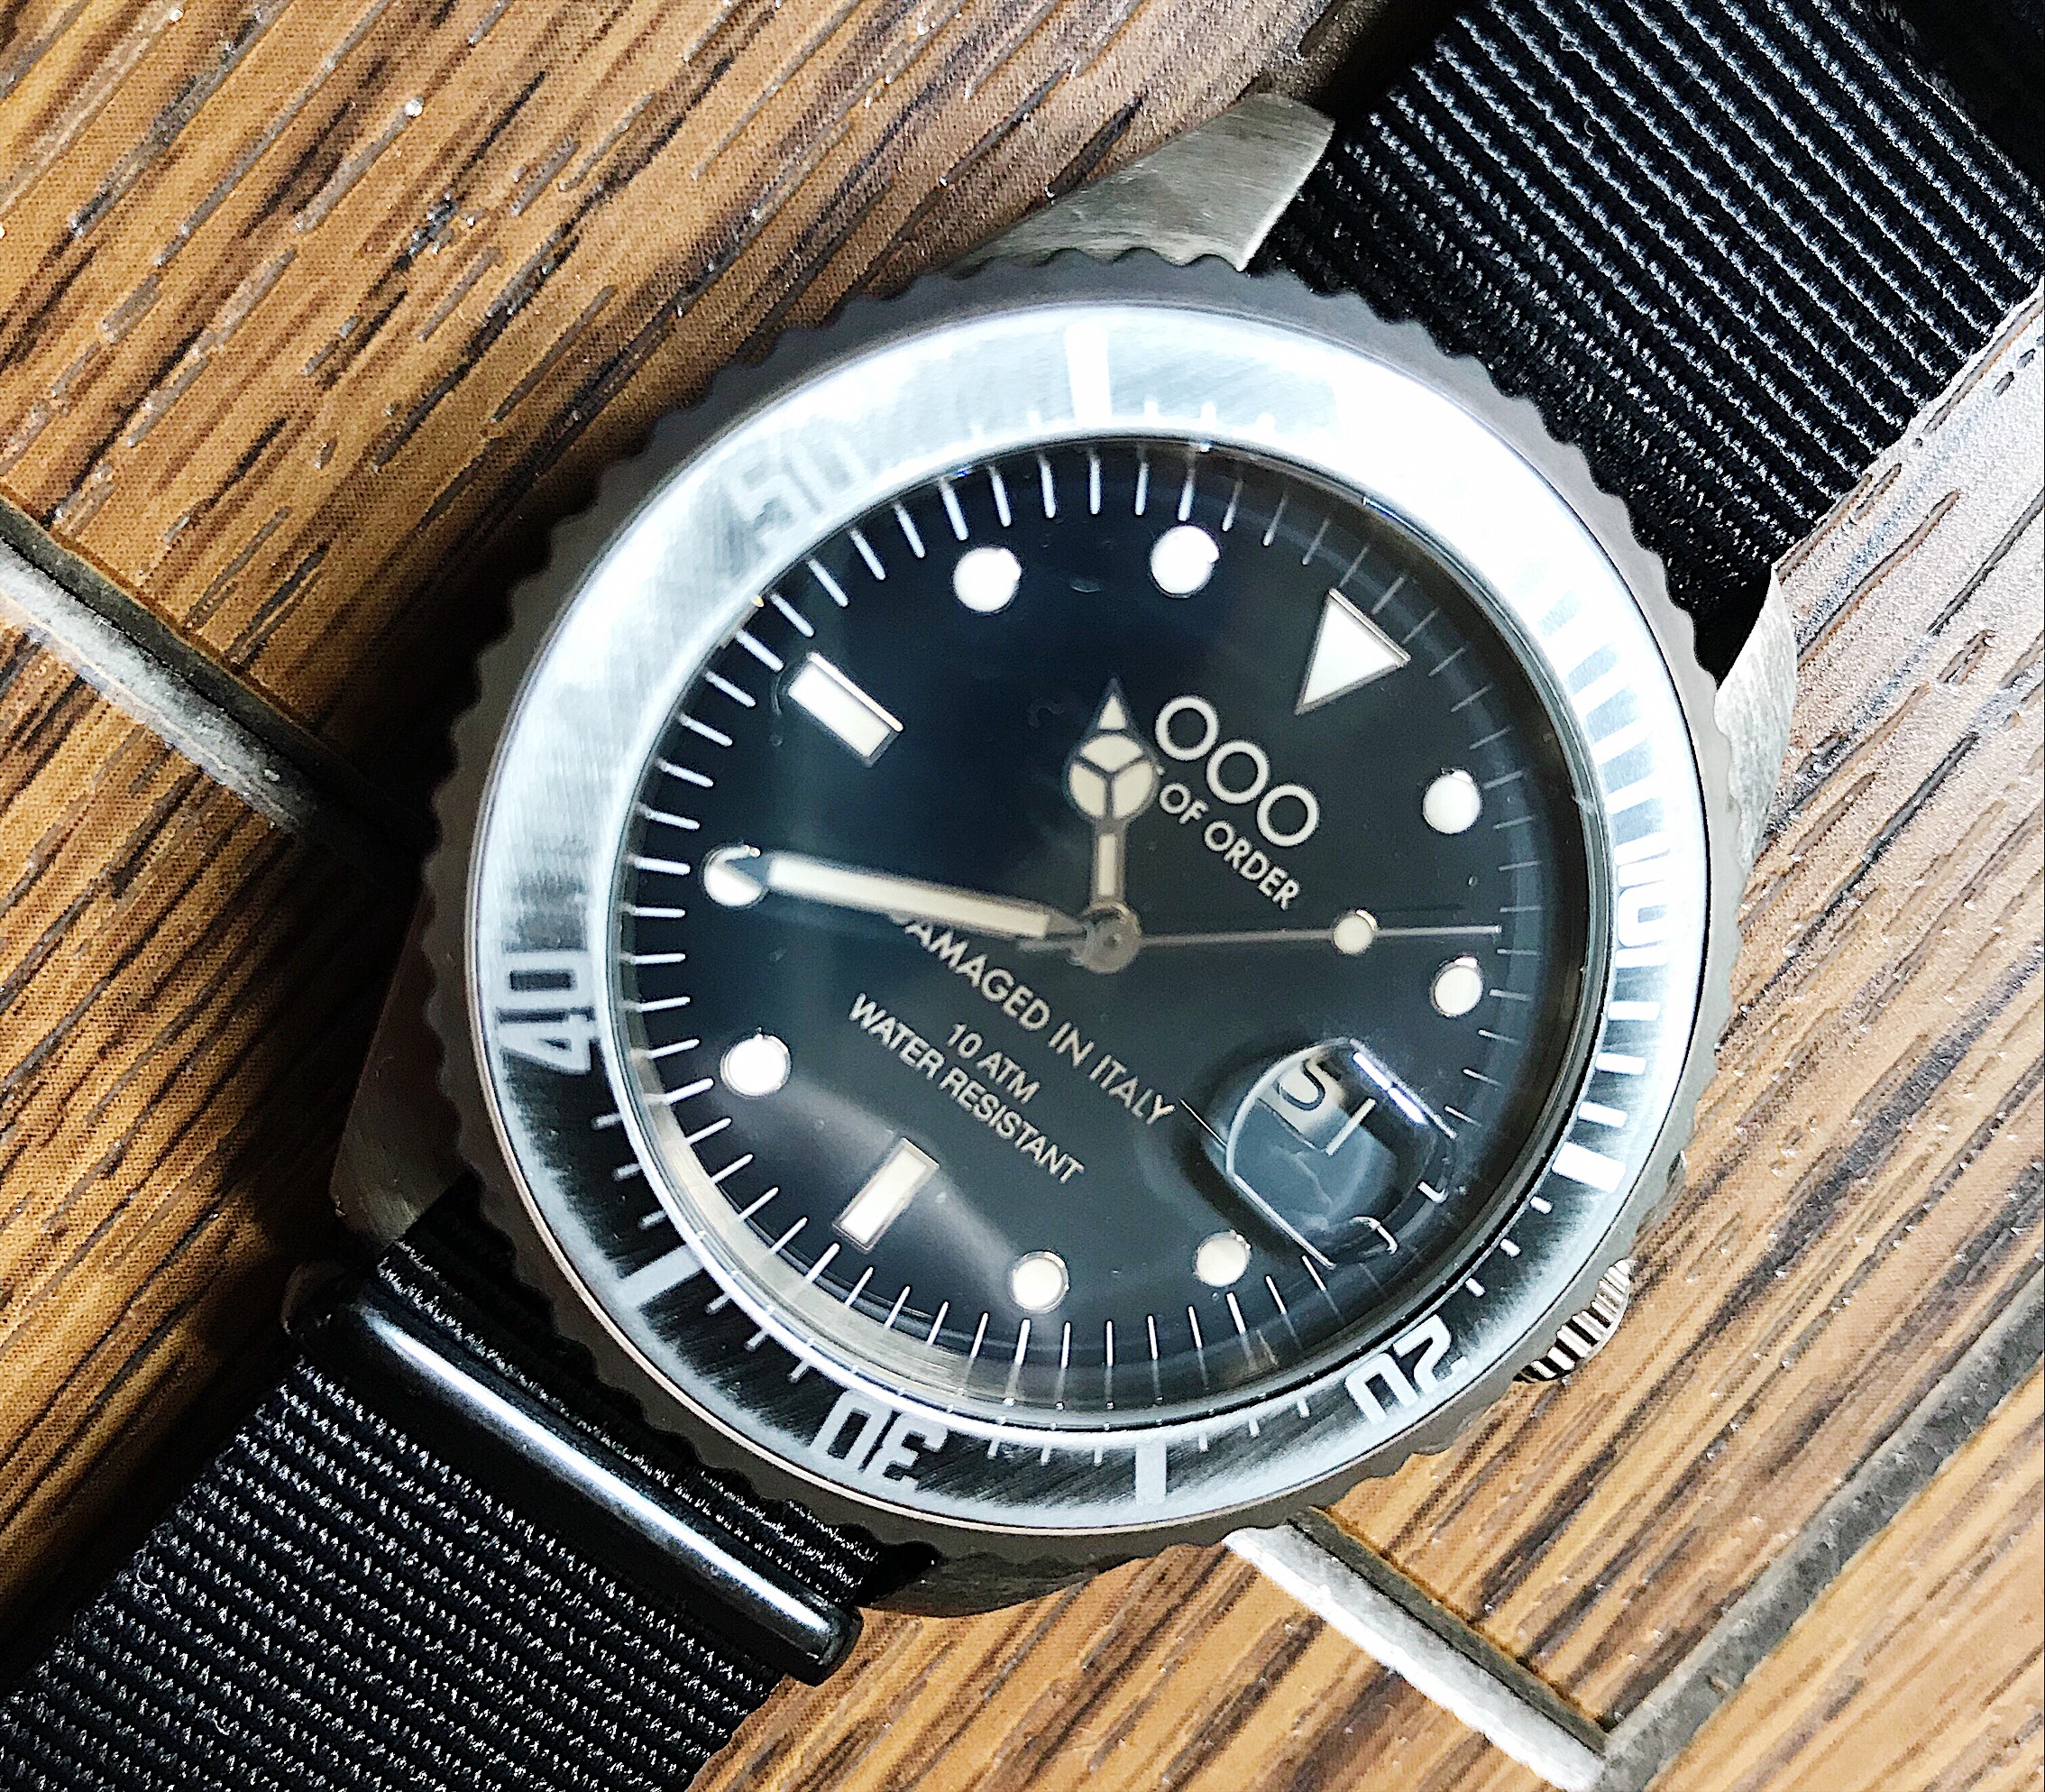 ダメージ加工の施された腕時計。OUT OF ORDERのダイバーズウォッチ 